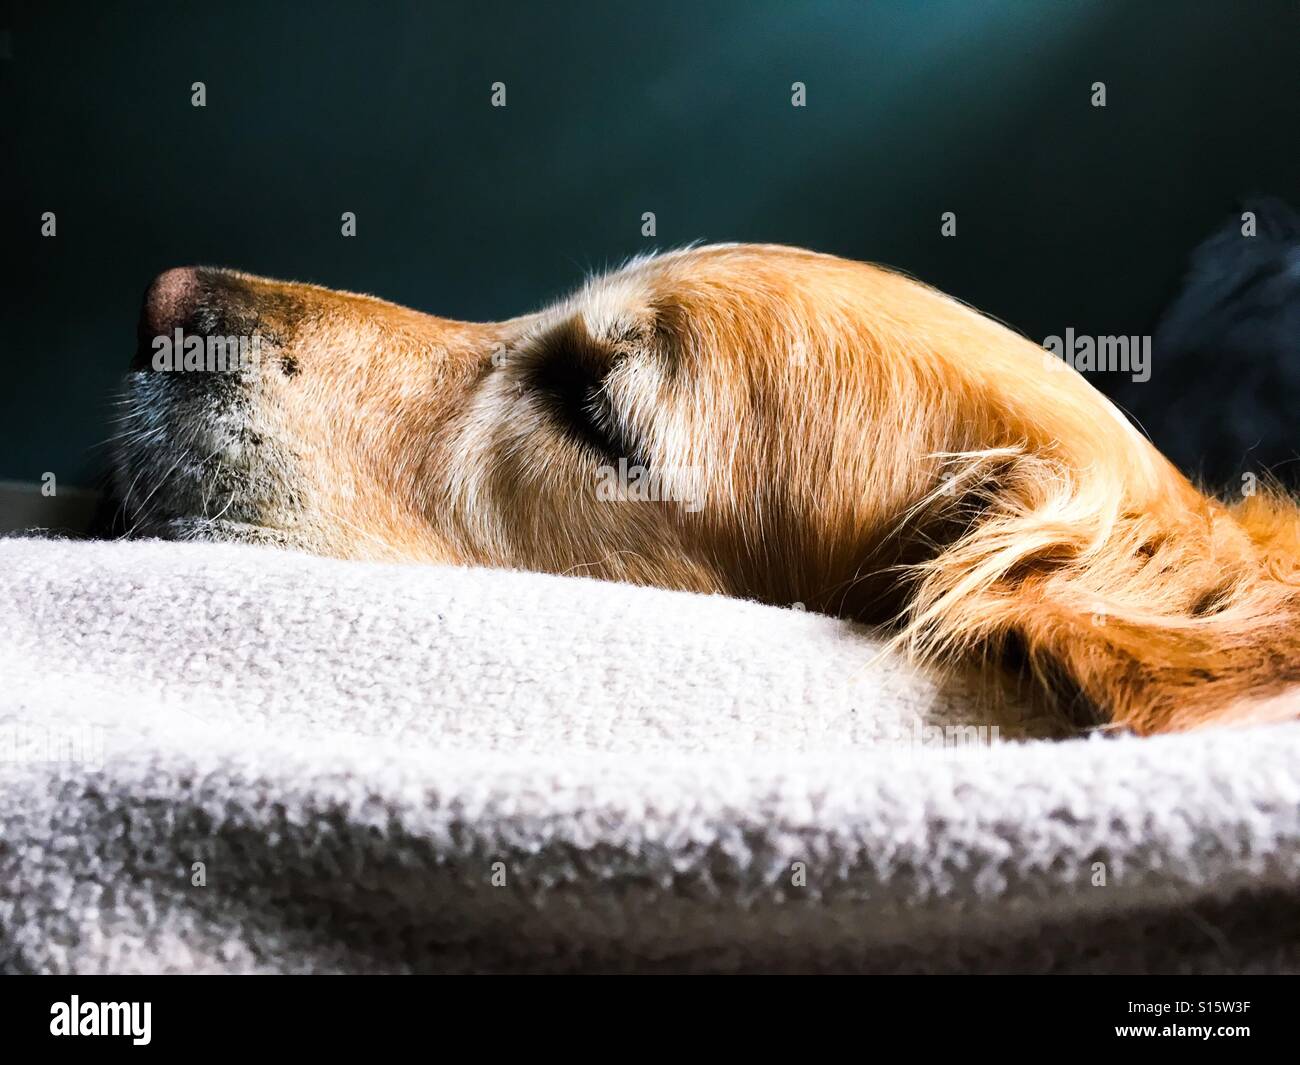 A sleeping Golden Retriever Stock Photo